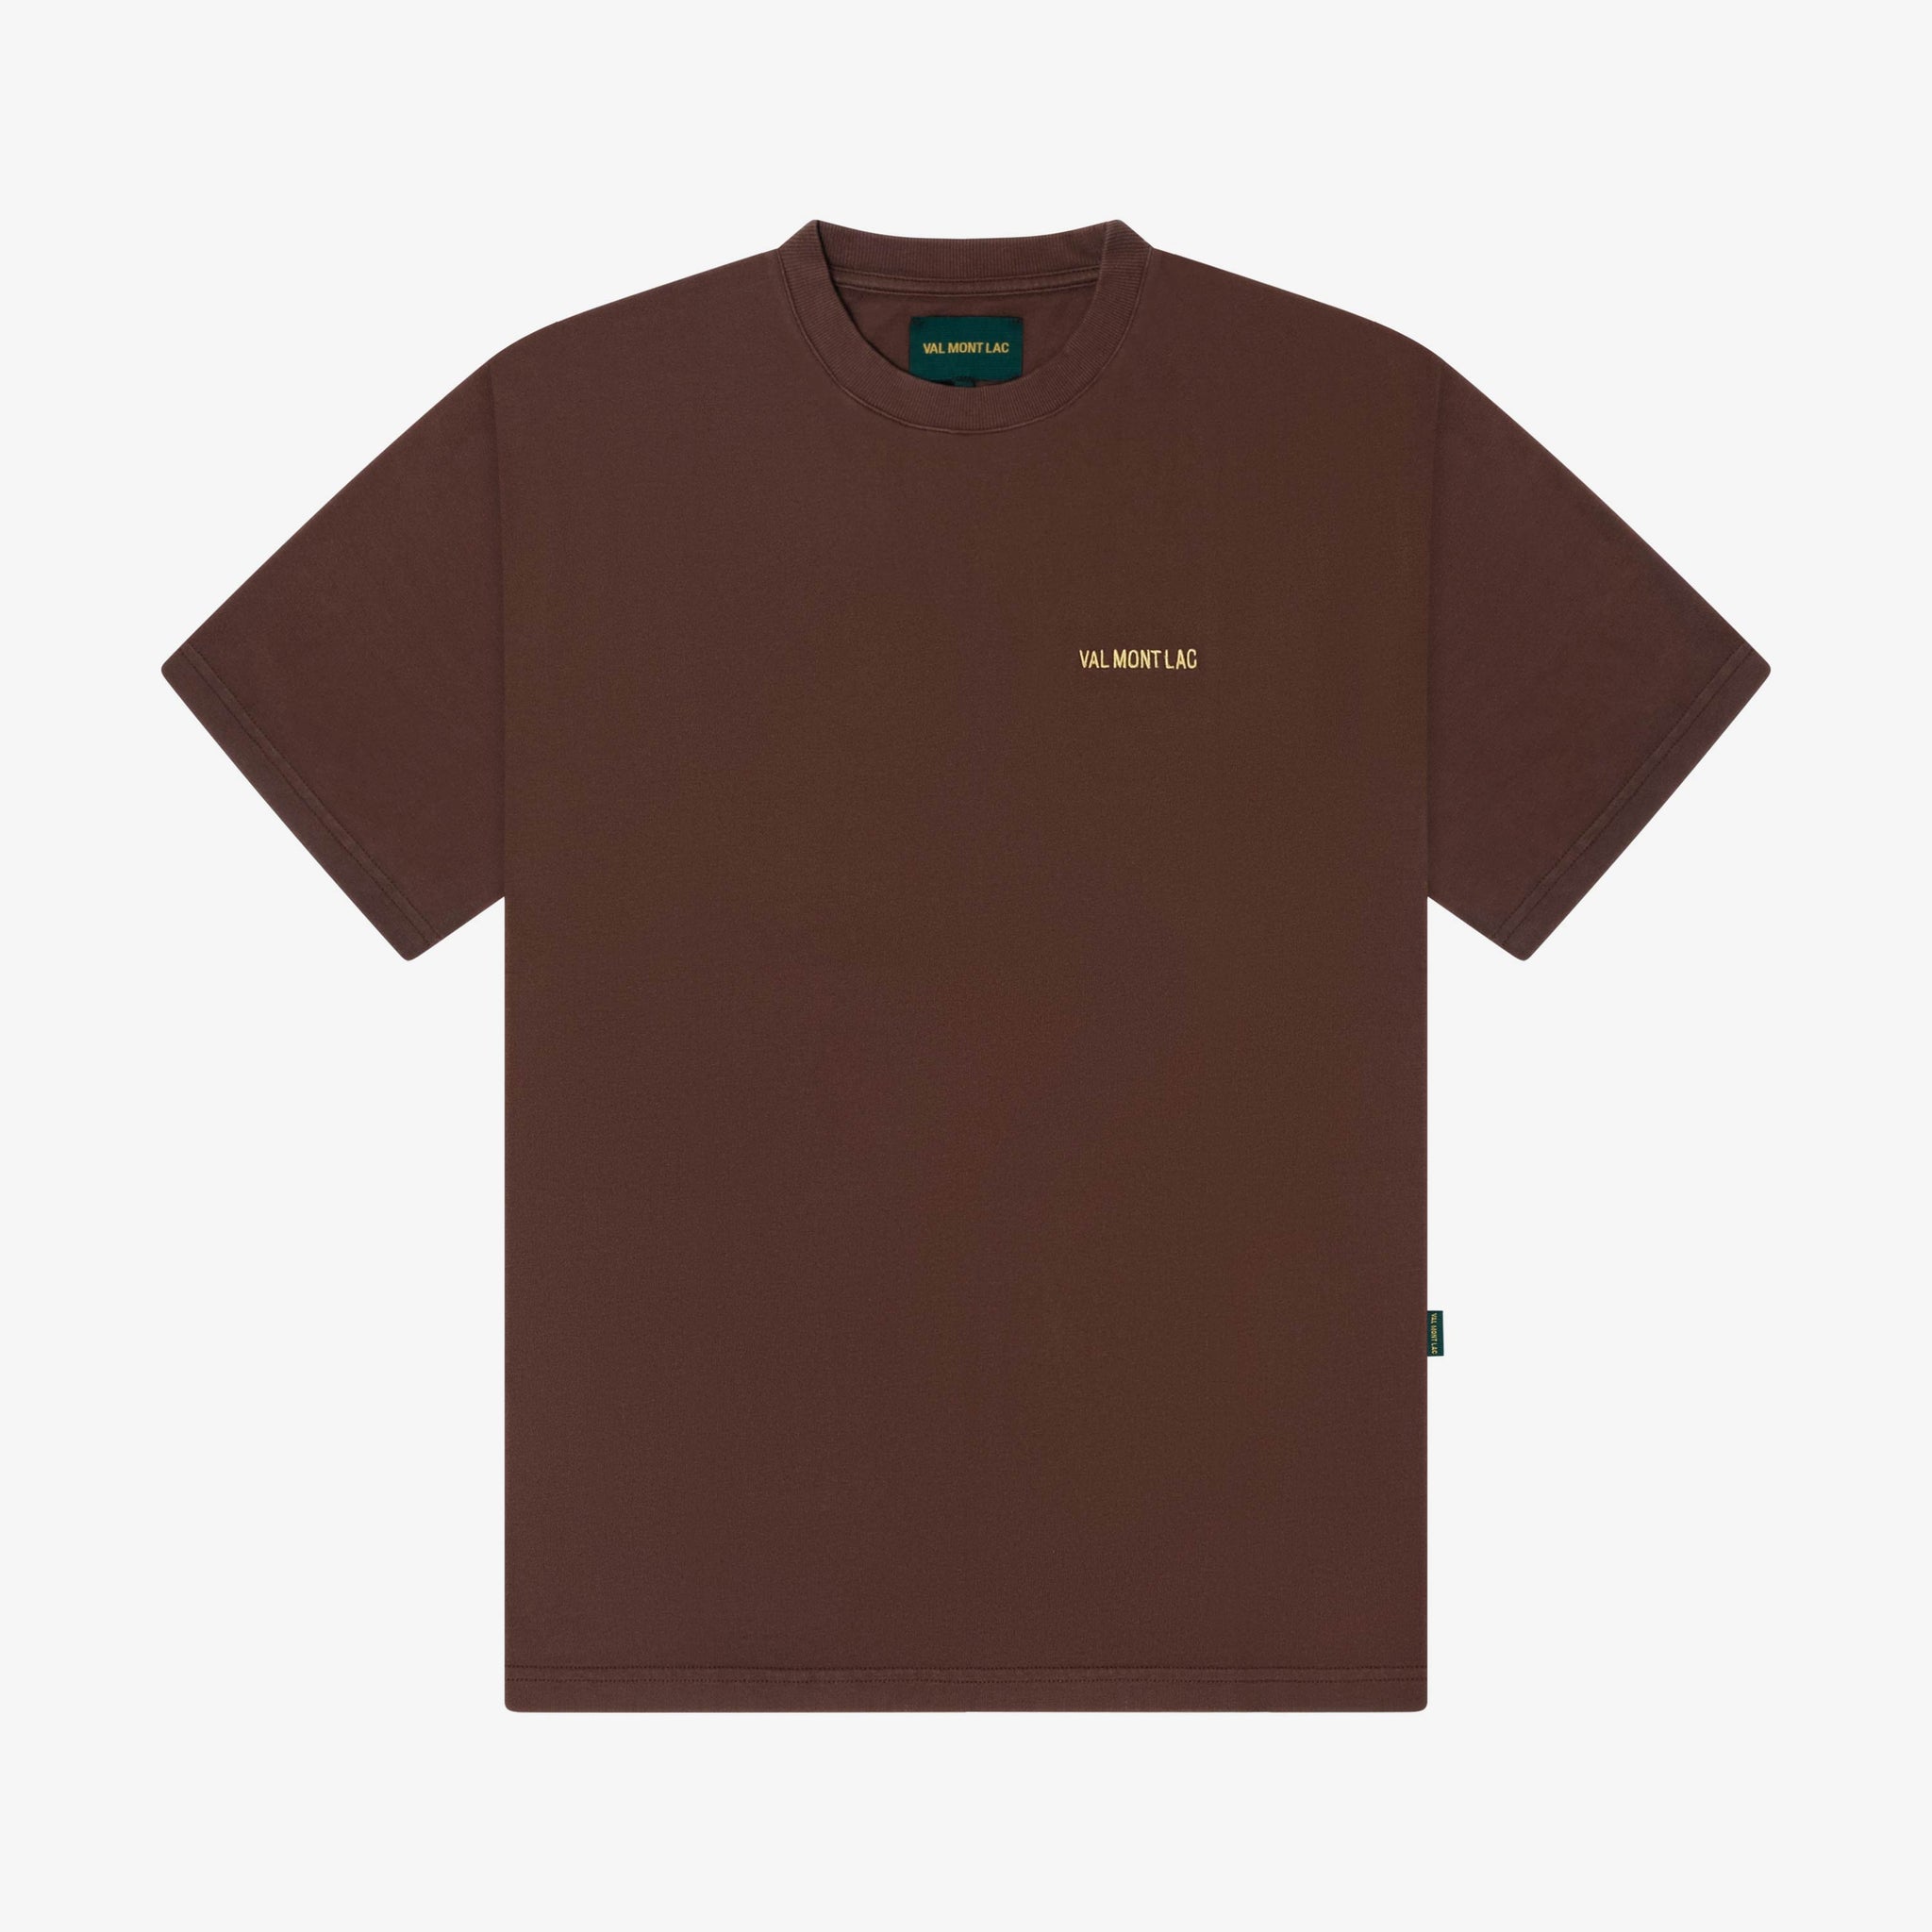 Brun|Brun T-shirt classique en coton biologique